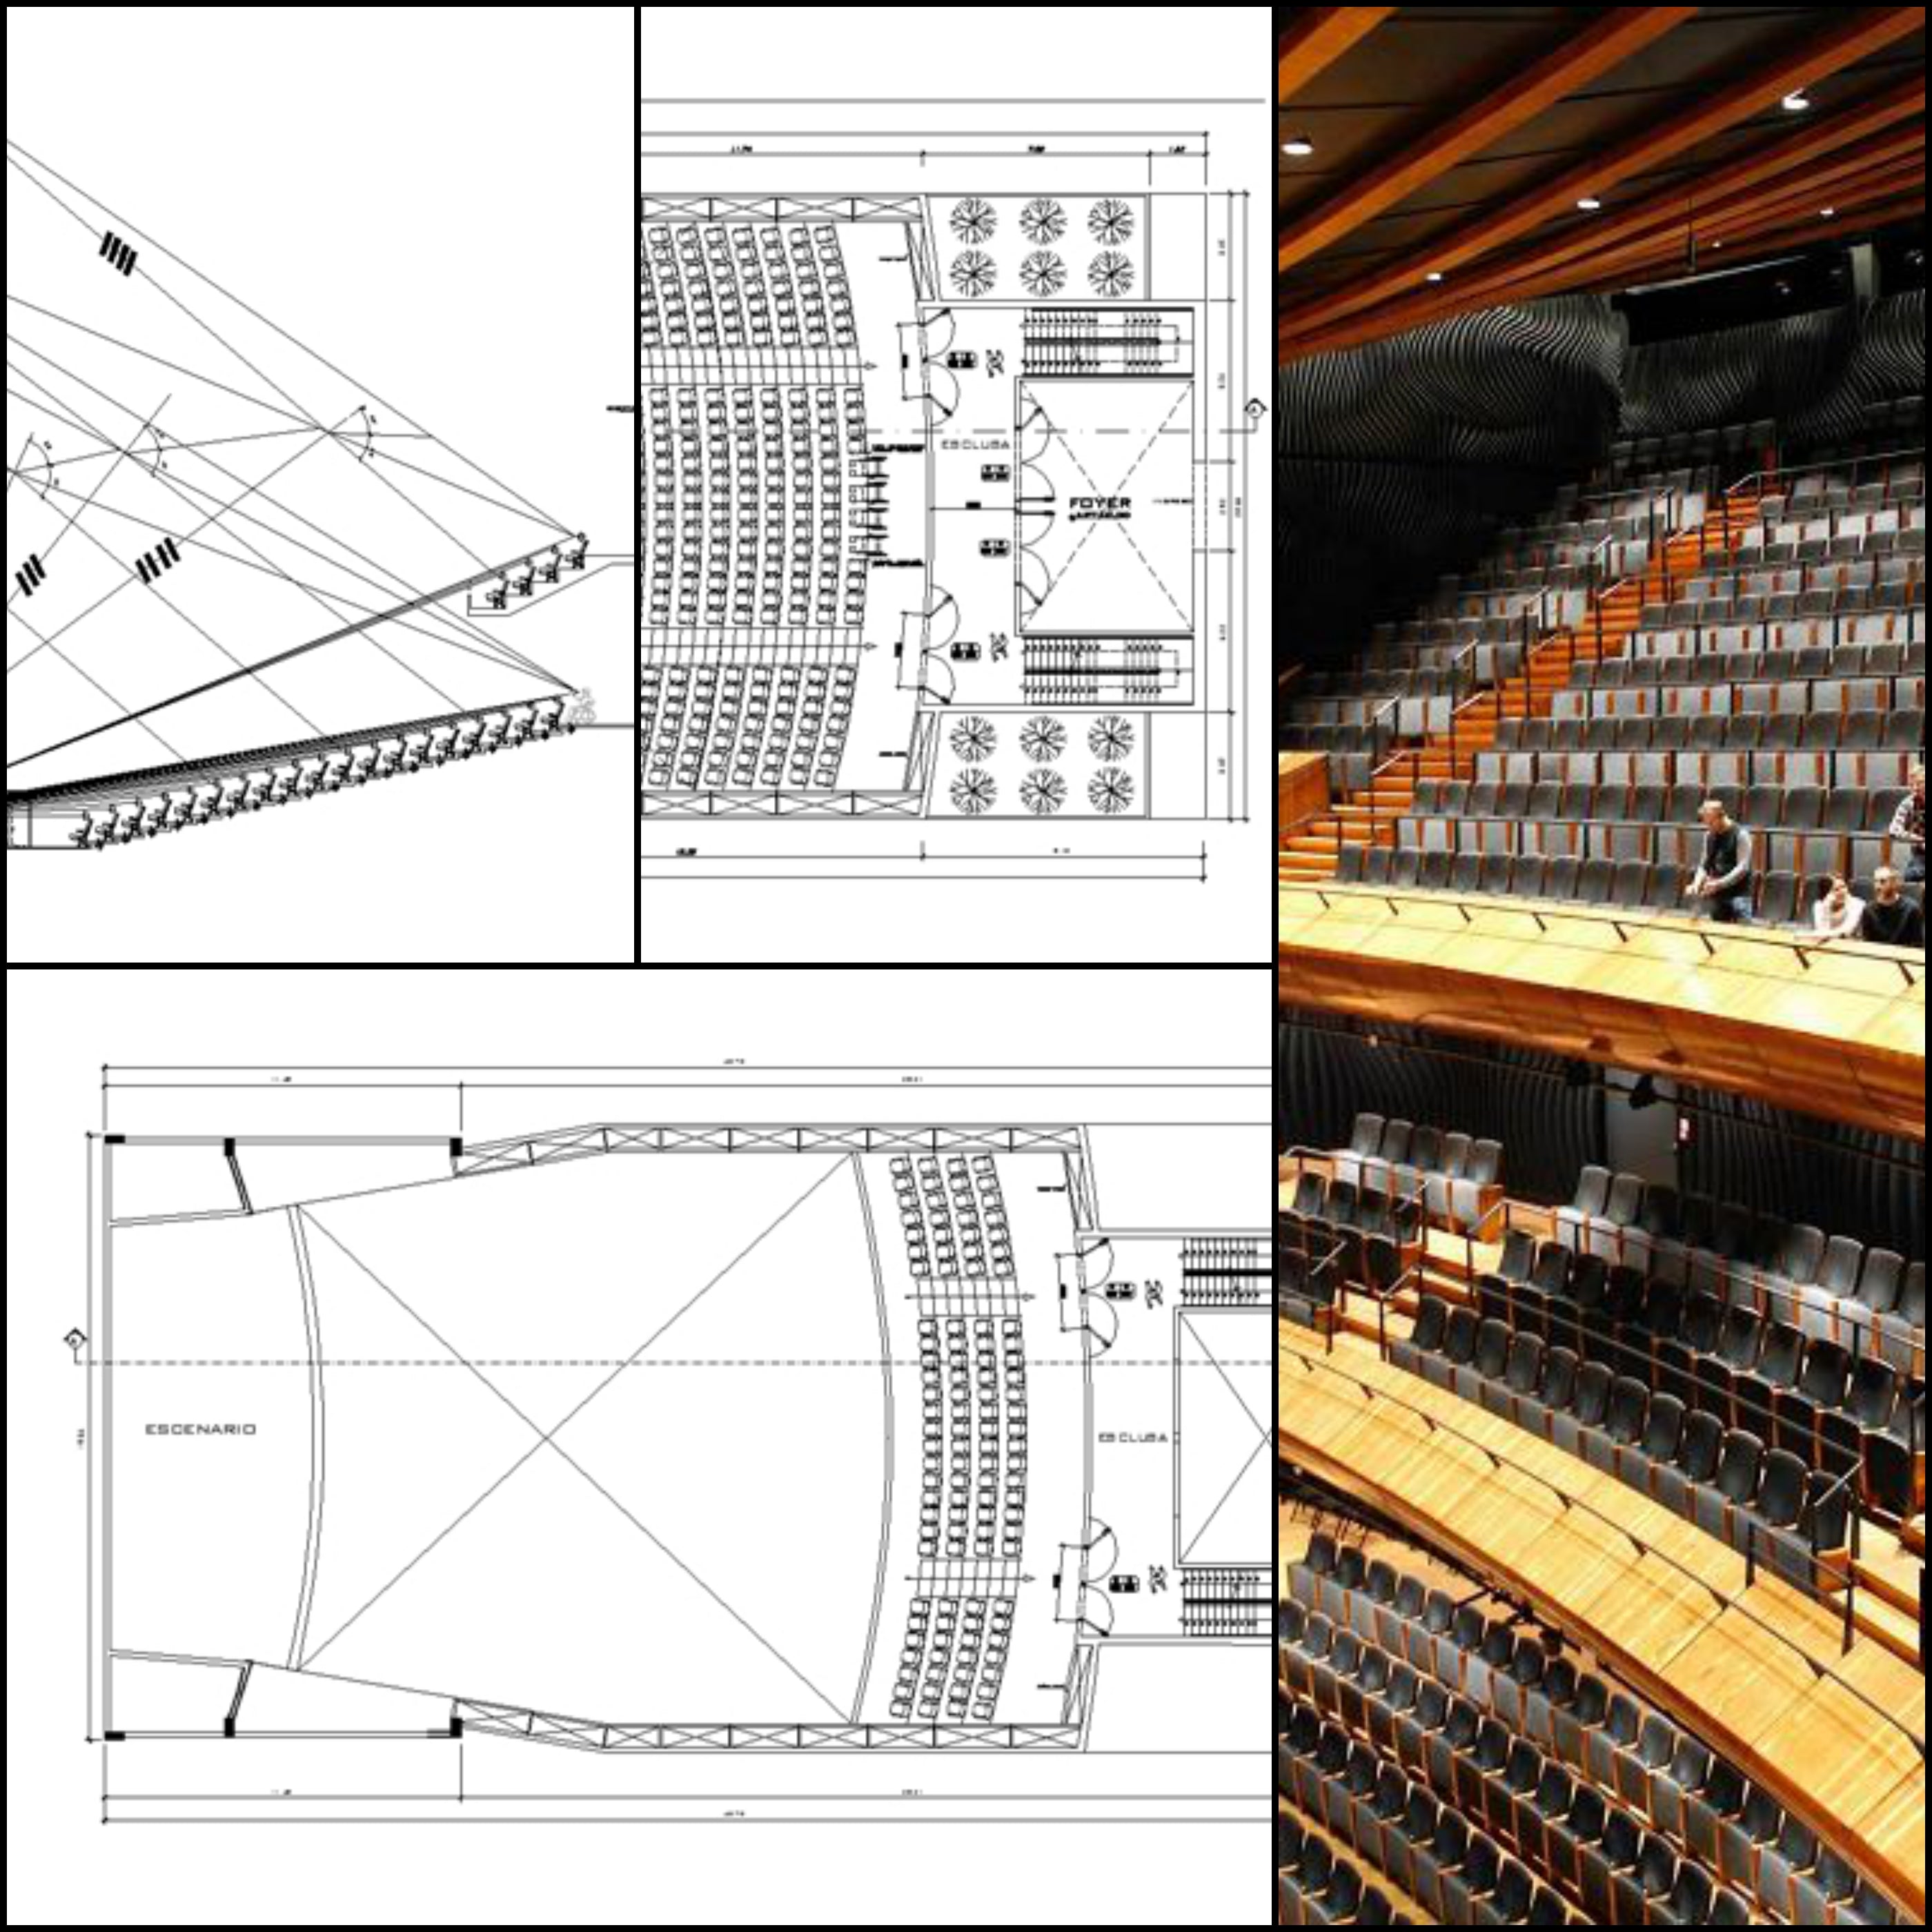 ★【Auditorium CAD Details V.2】@Auditorium Design,Autocad Blocks,AuditoriumDetails,Auditorium Section,Auditorium elevation design drawings